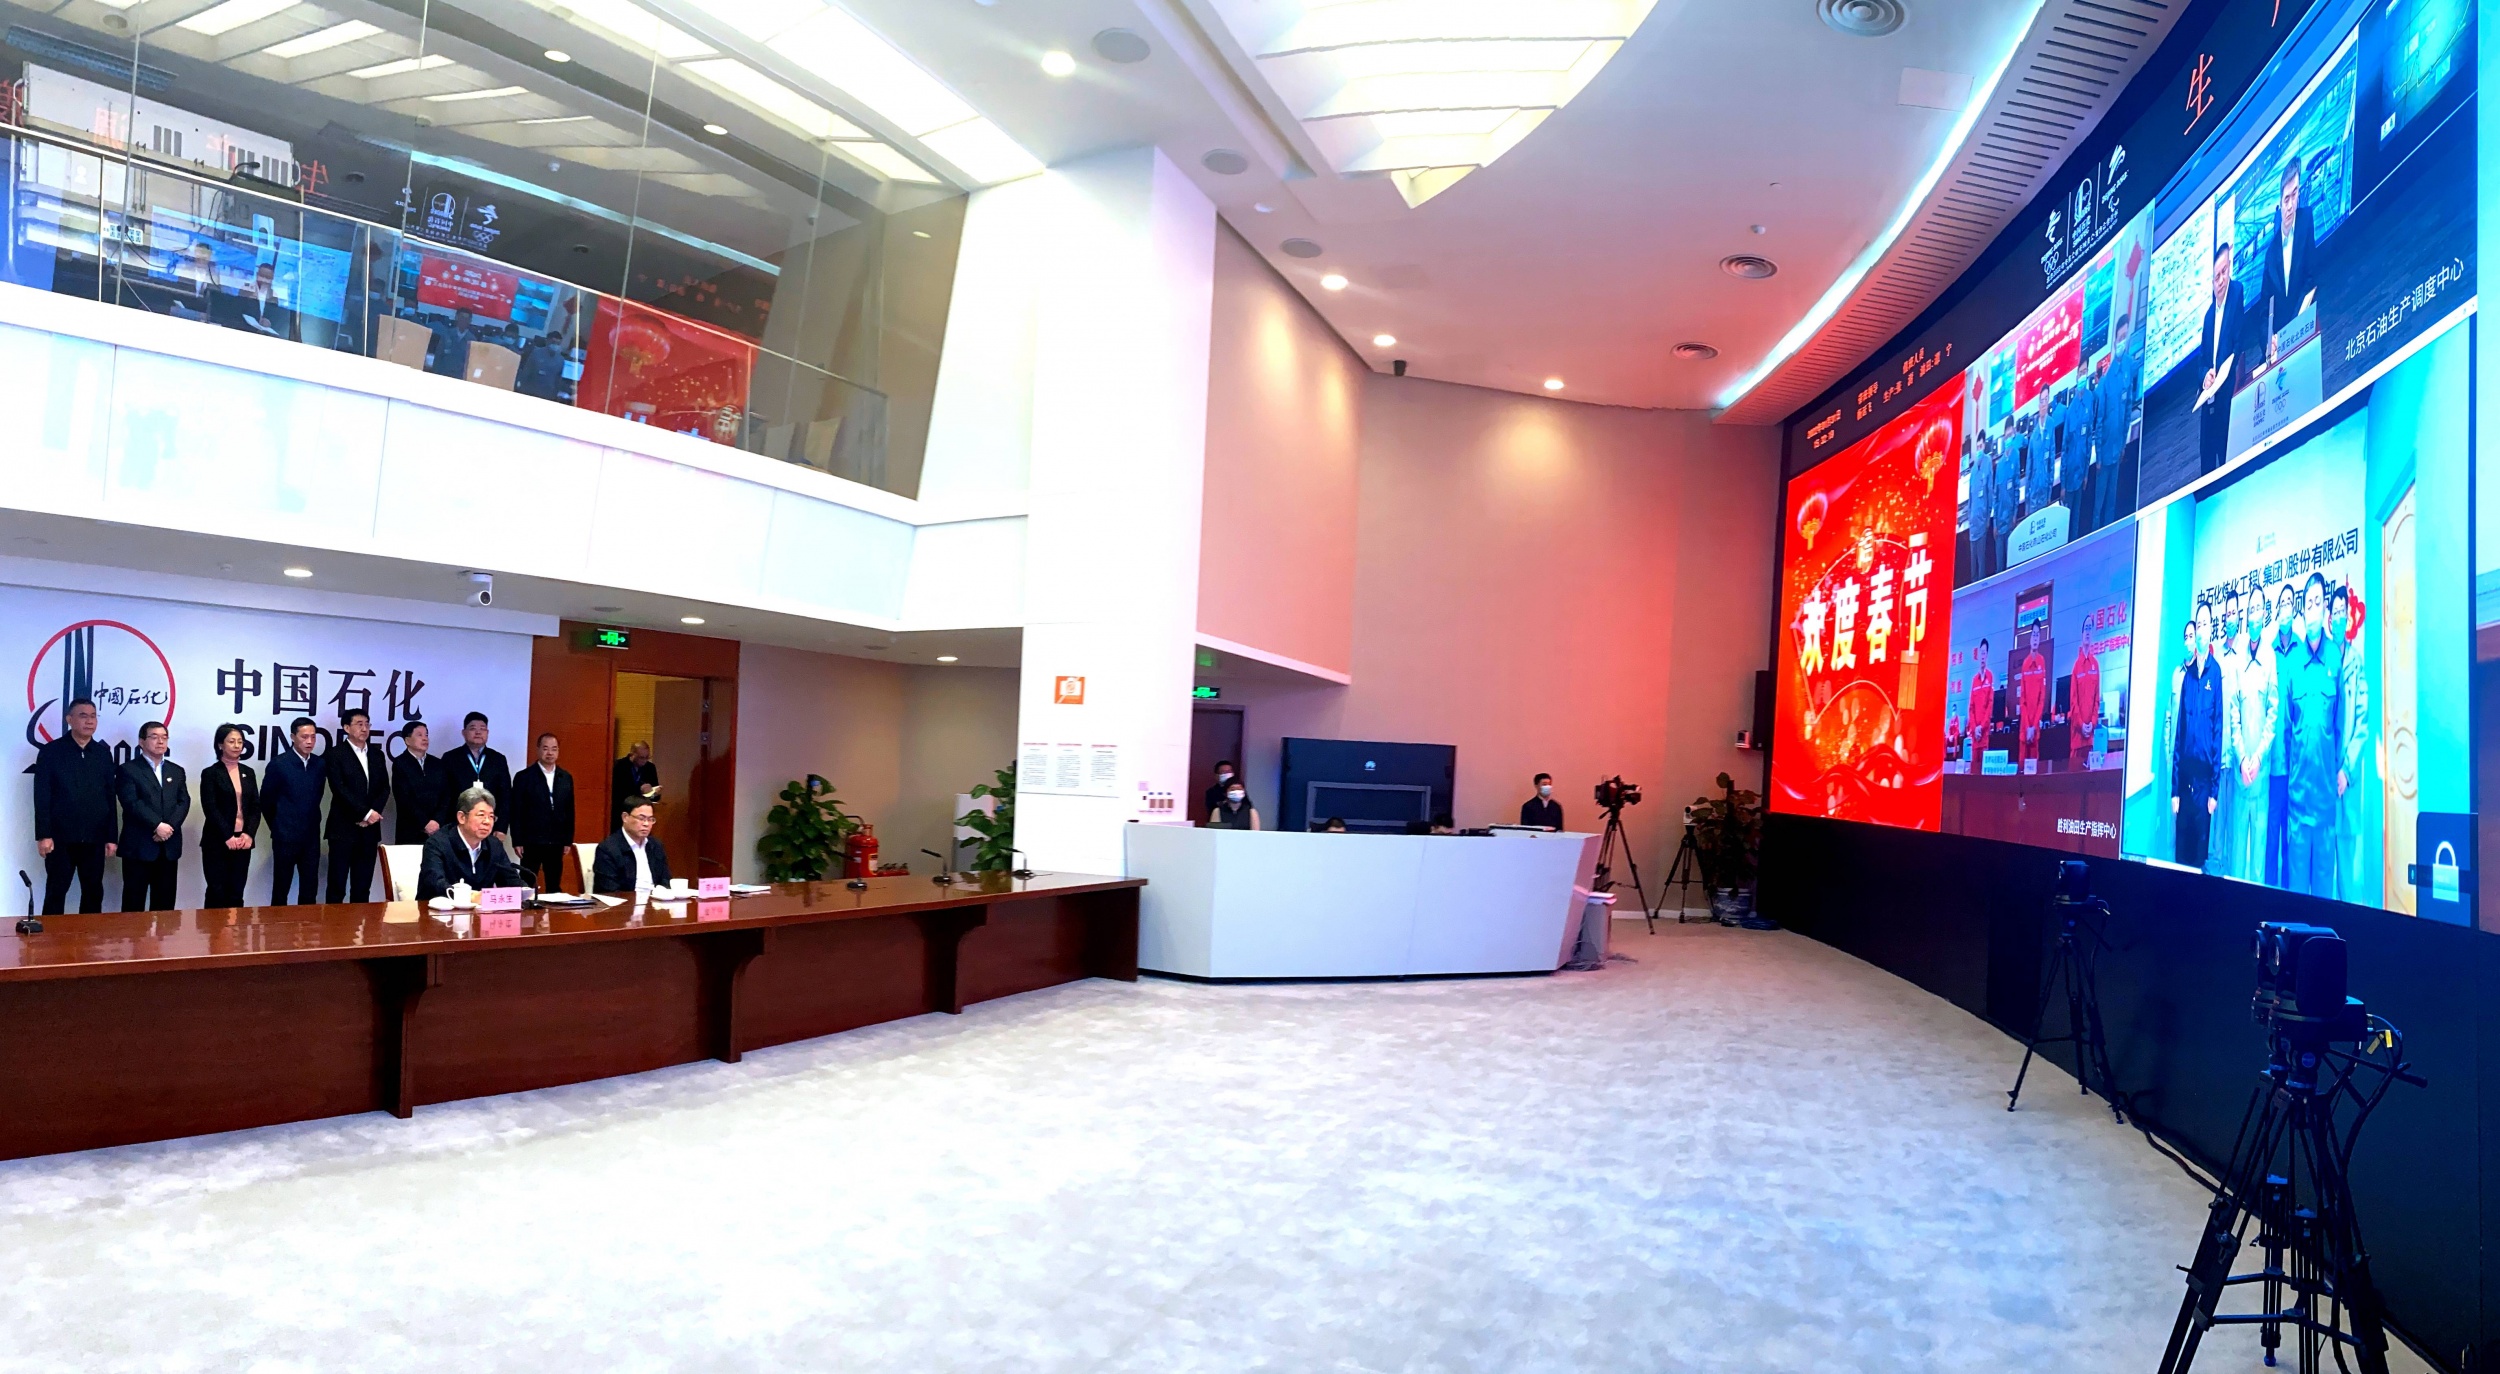 31 января, в канун китайского Нового года, г-н Ма Юншэн (председатель группы компаний Sinopec) по видеосвязи поздравил с Новым годом сотрудников, участвующих в реализации проекта Амурского ГХК